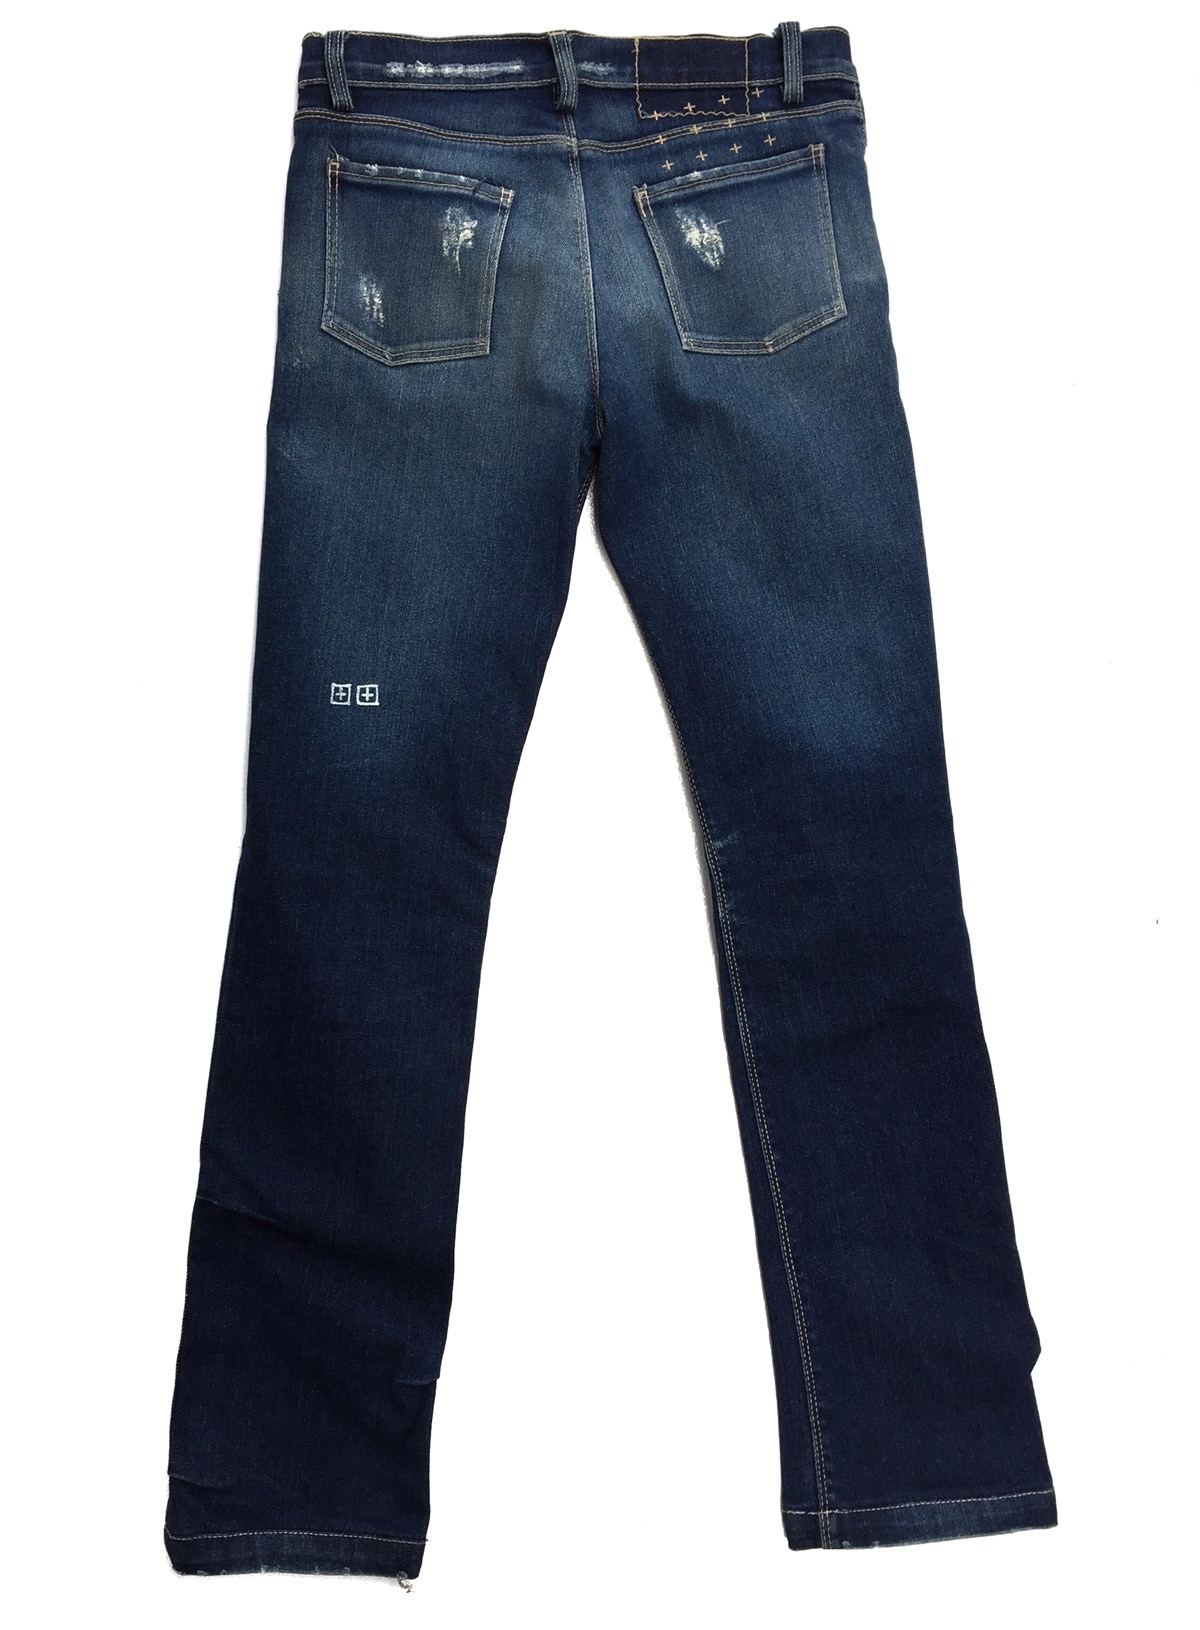 KSUBI Distressed Rip Van Winkle Jeans - 1